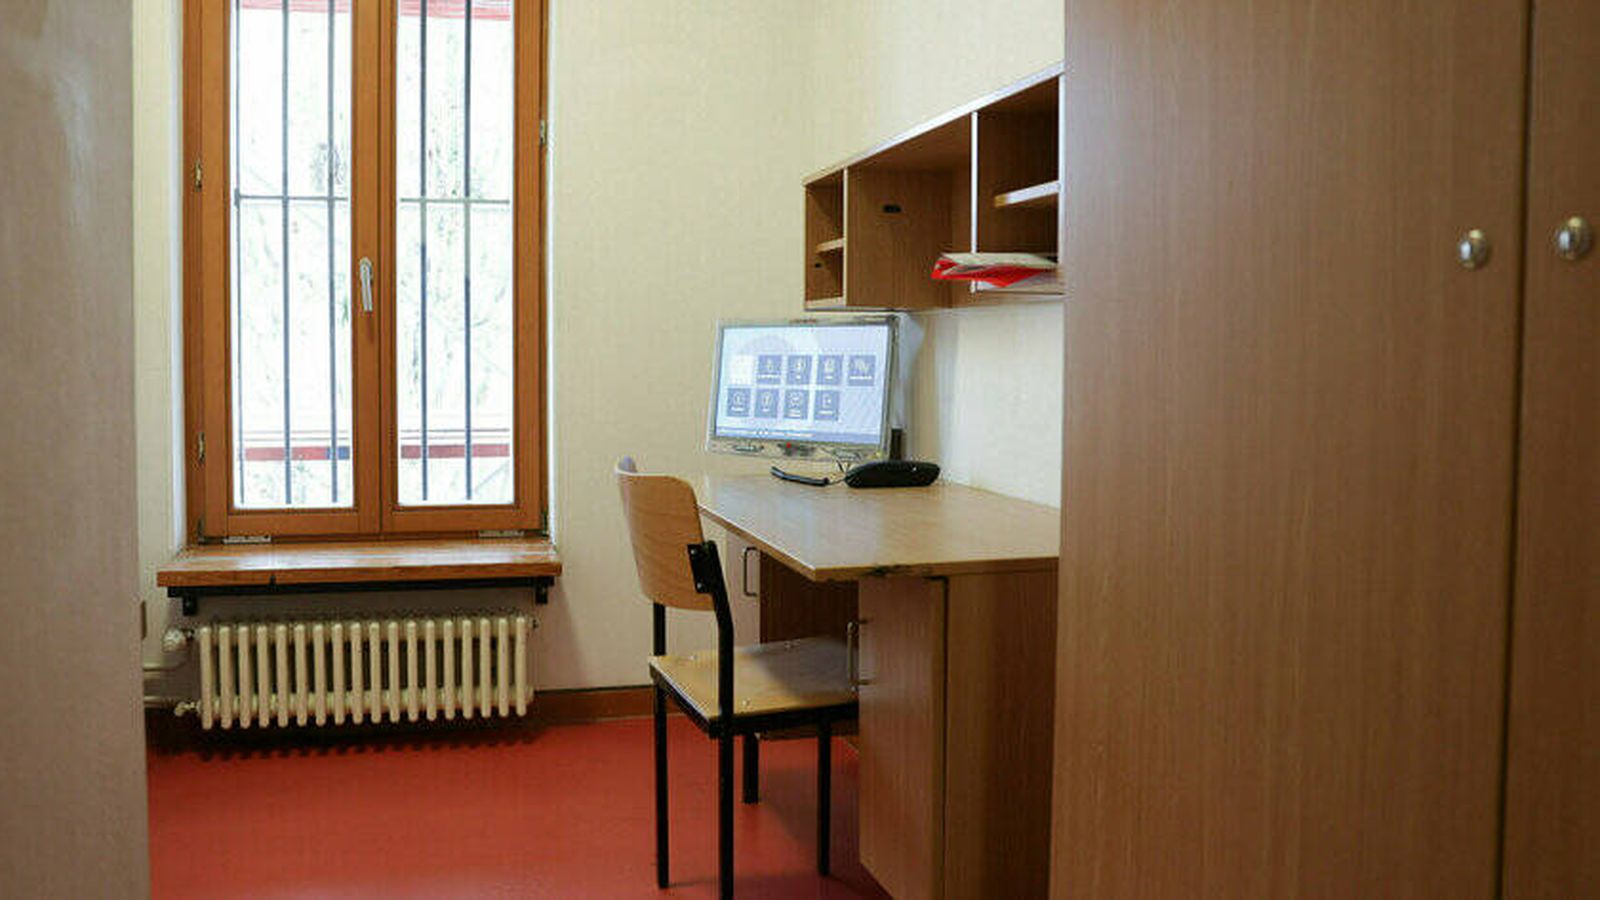 La JVA de Lichtenberg es la primera prisión de Alemania que ofrece acceso a Internet a los reclusos.